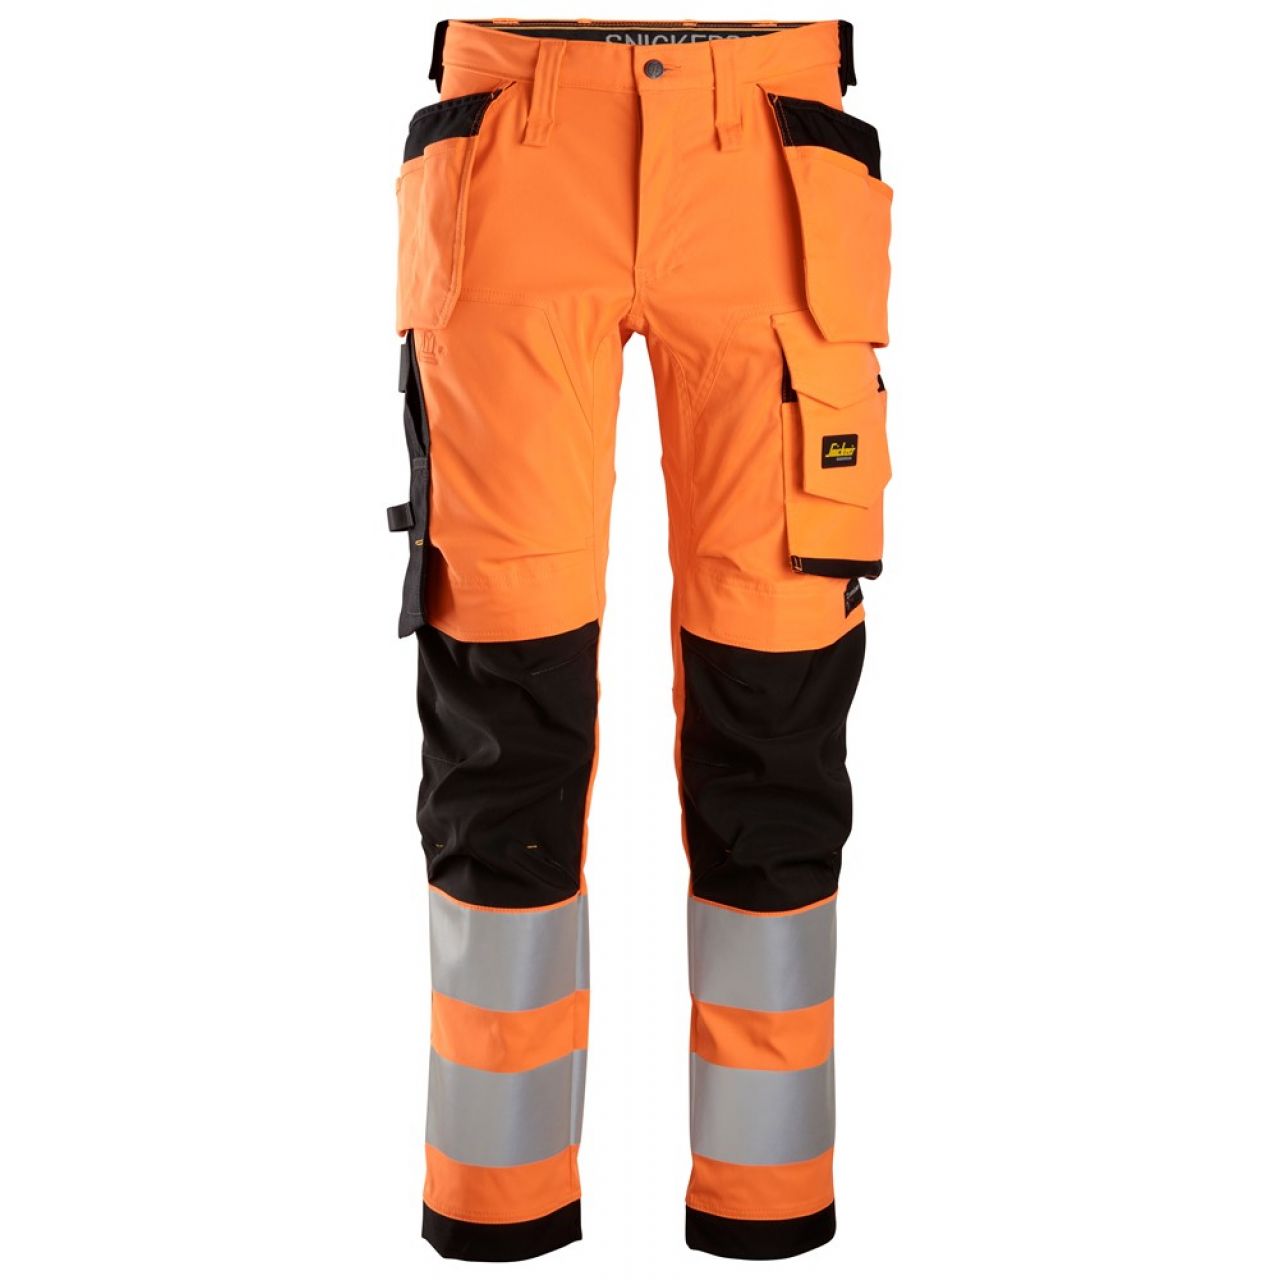 6243 Pantalones largos de trabajo elásticos de alta visibilidad clase 2 con bolsillos flotantes naranja-negro talla 50